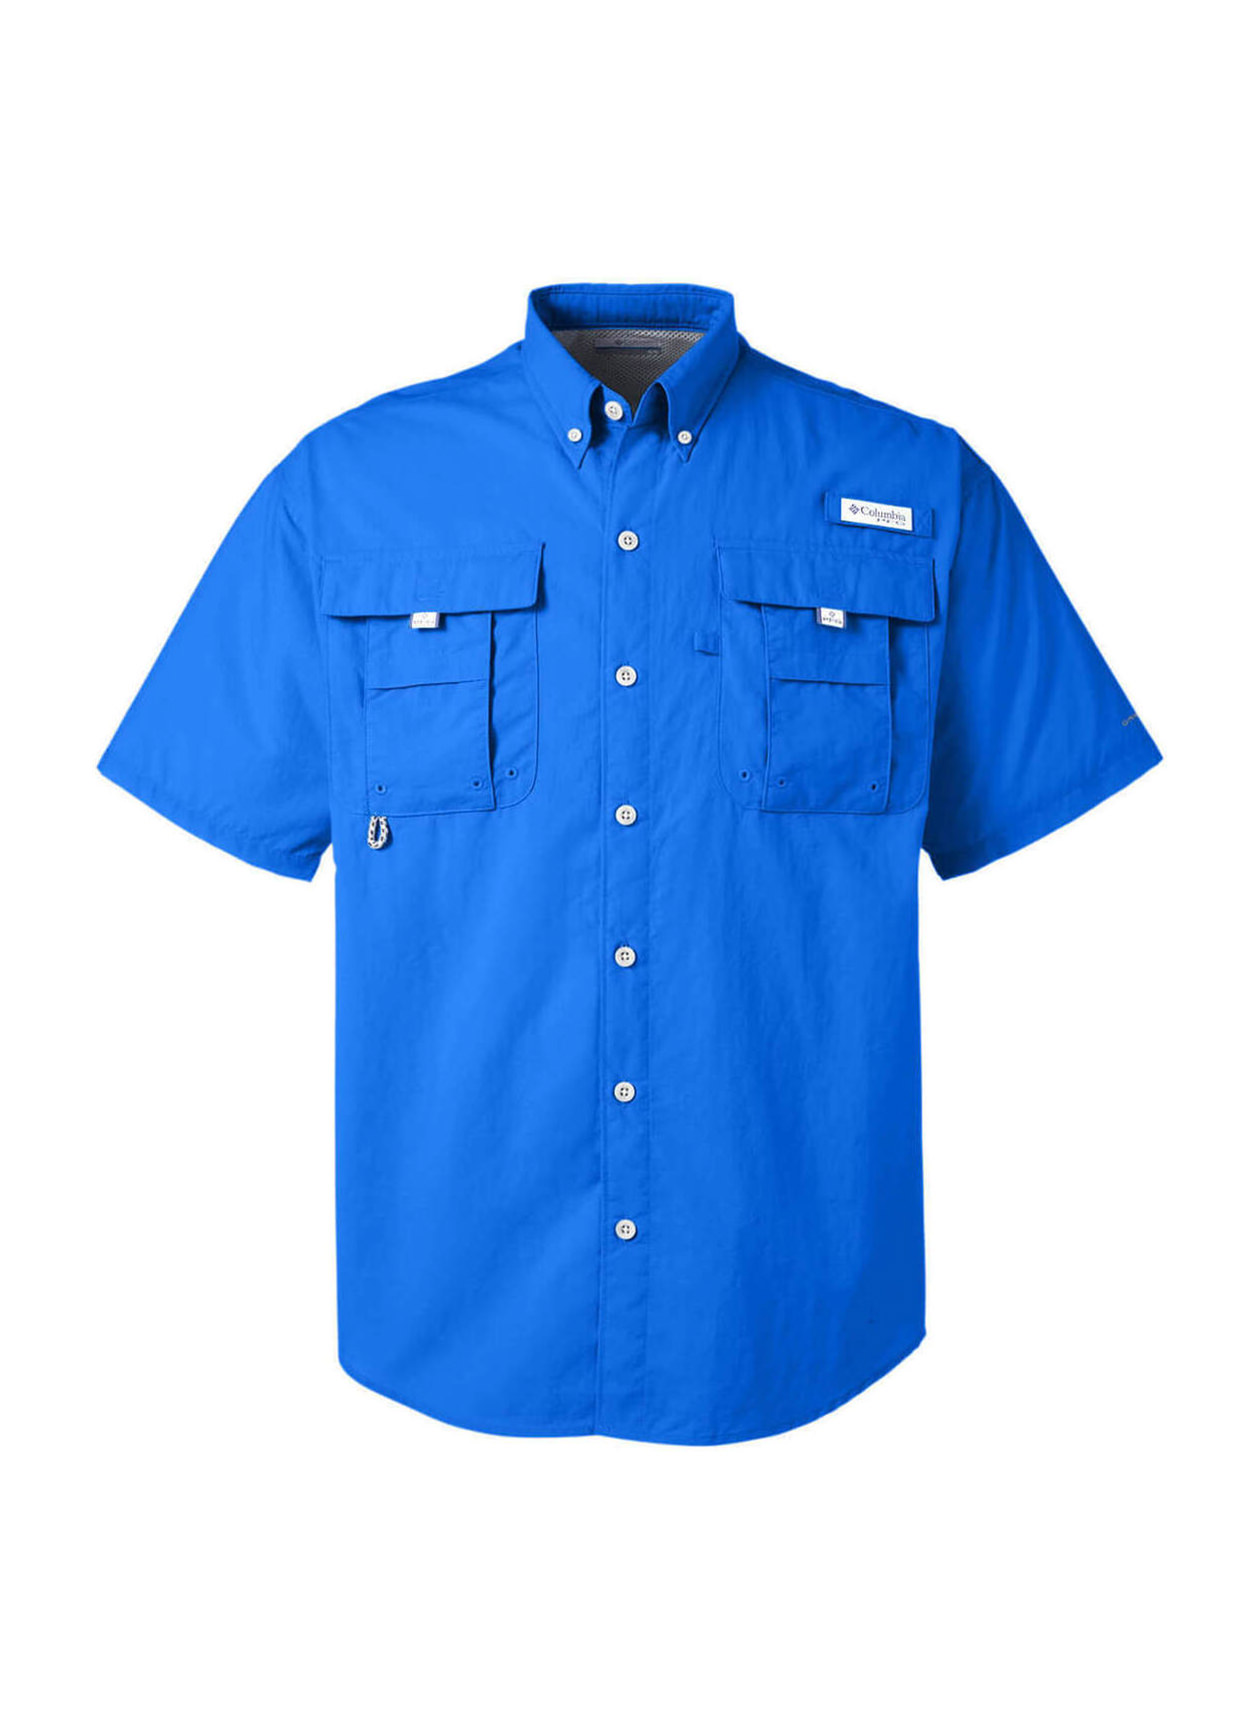 Columbia Button Up Fishing Shirt Mens XL PFG Short Sleeve Vented Navy Blue  #0119